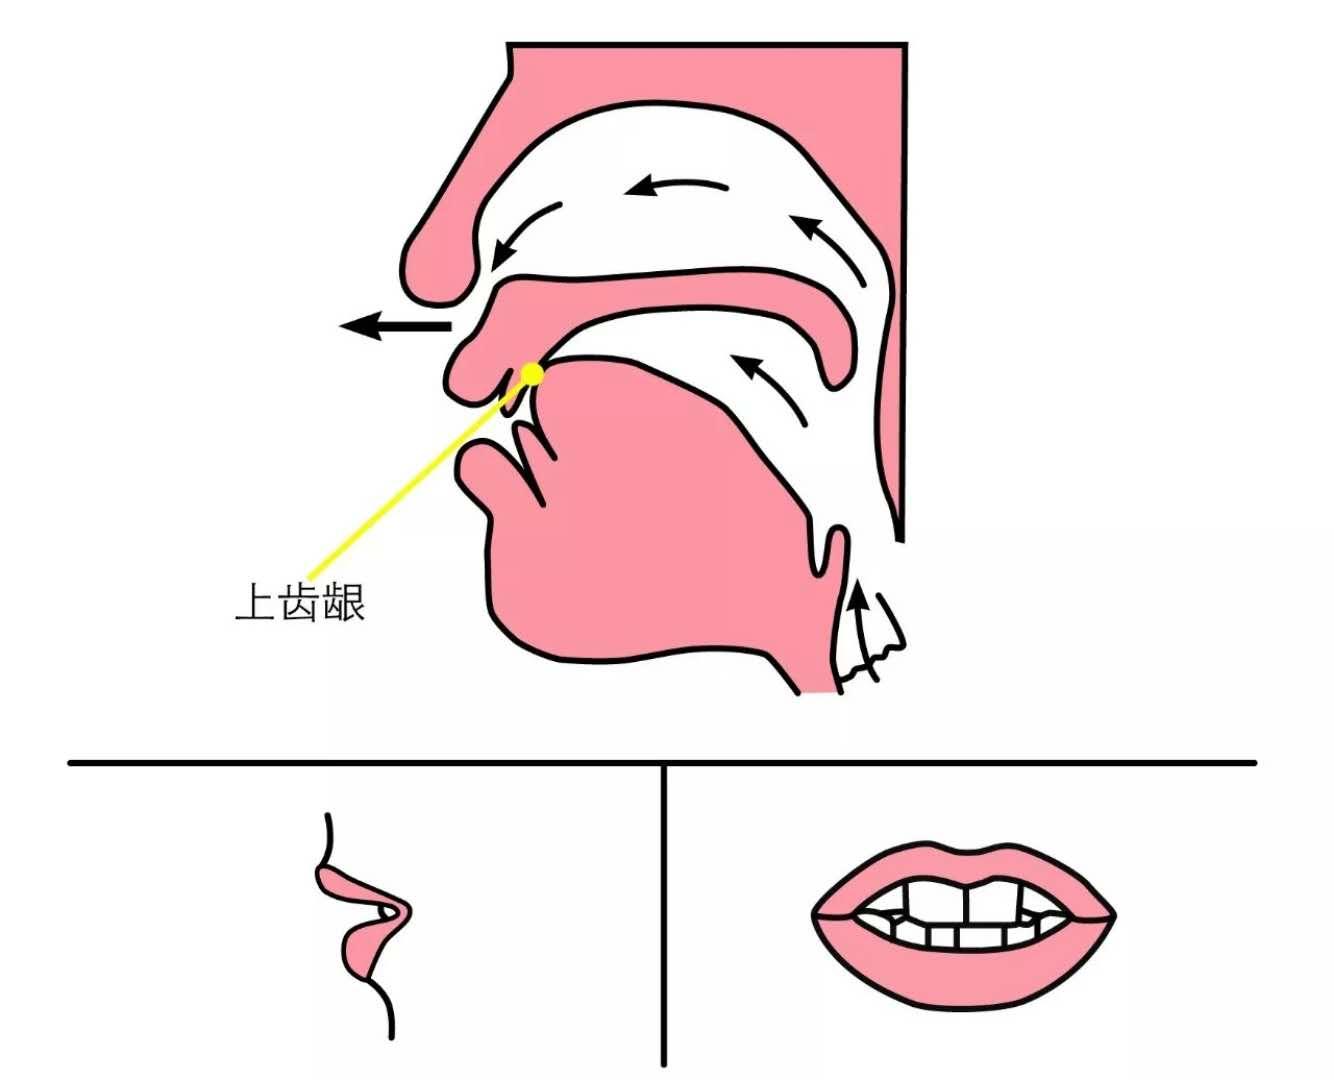 发n音时的舌位图